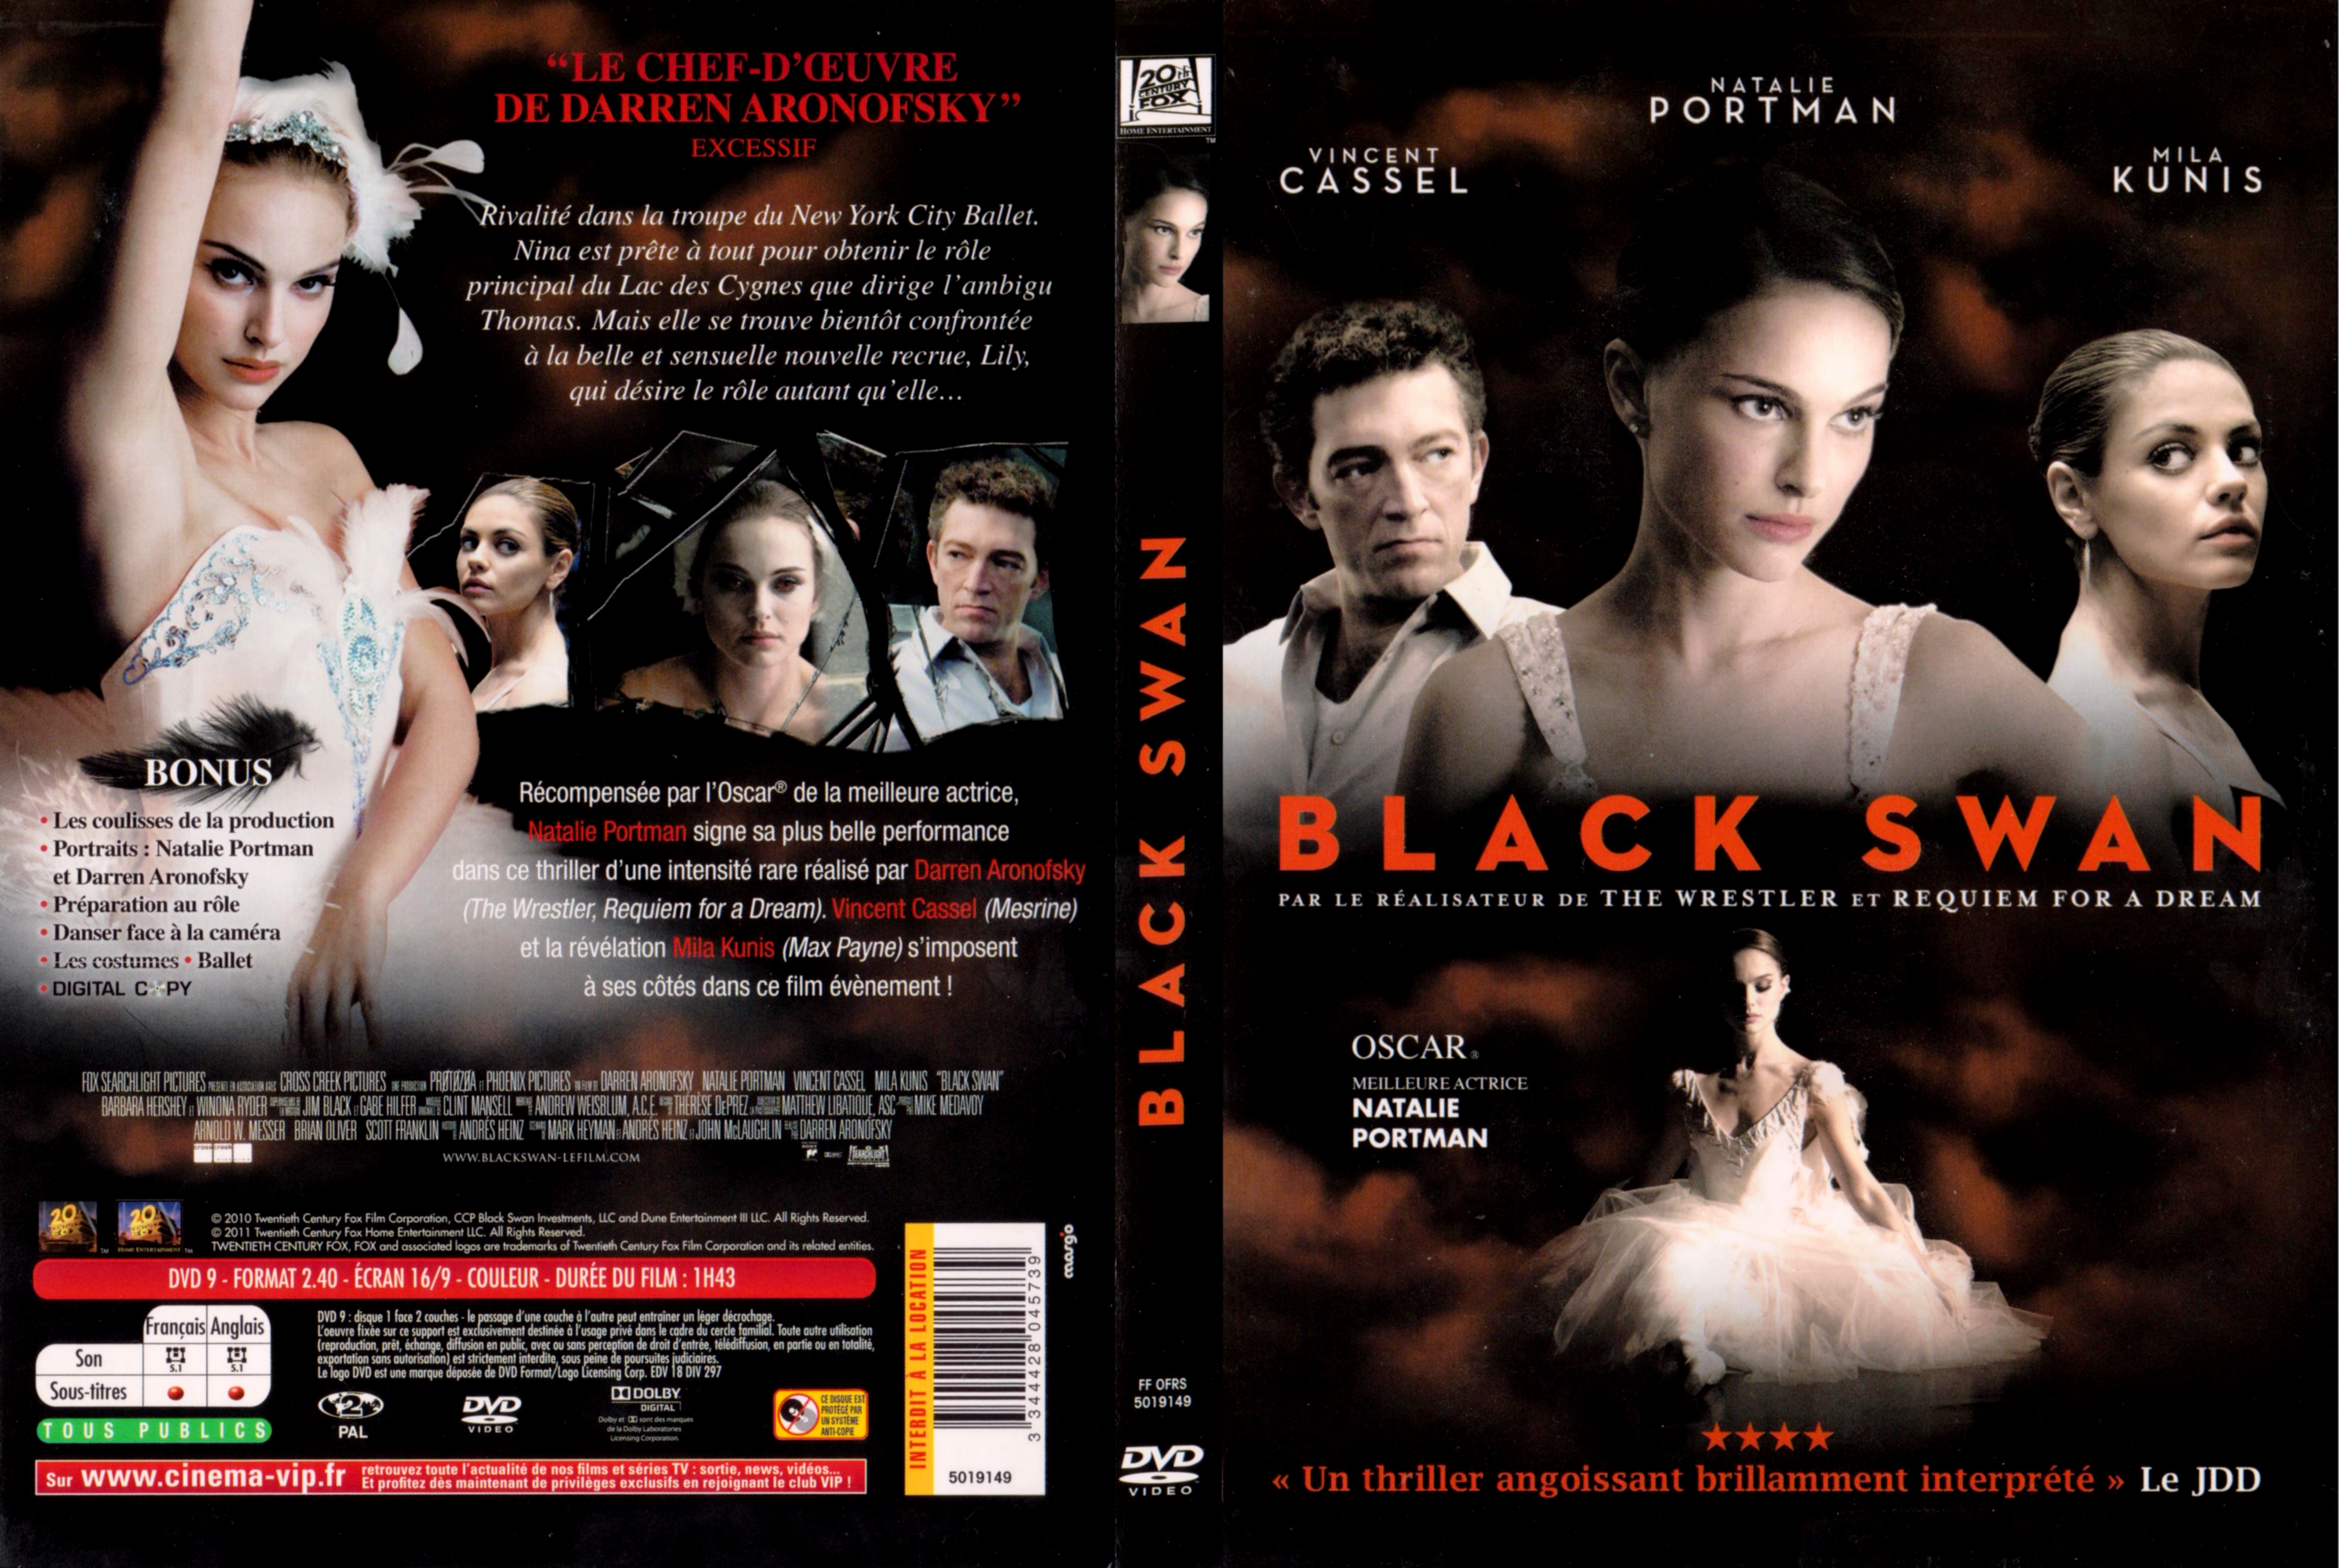 Jaquette DVD Black swan v2